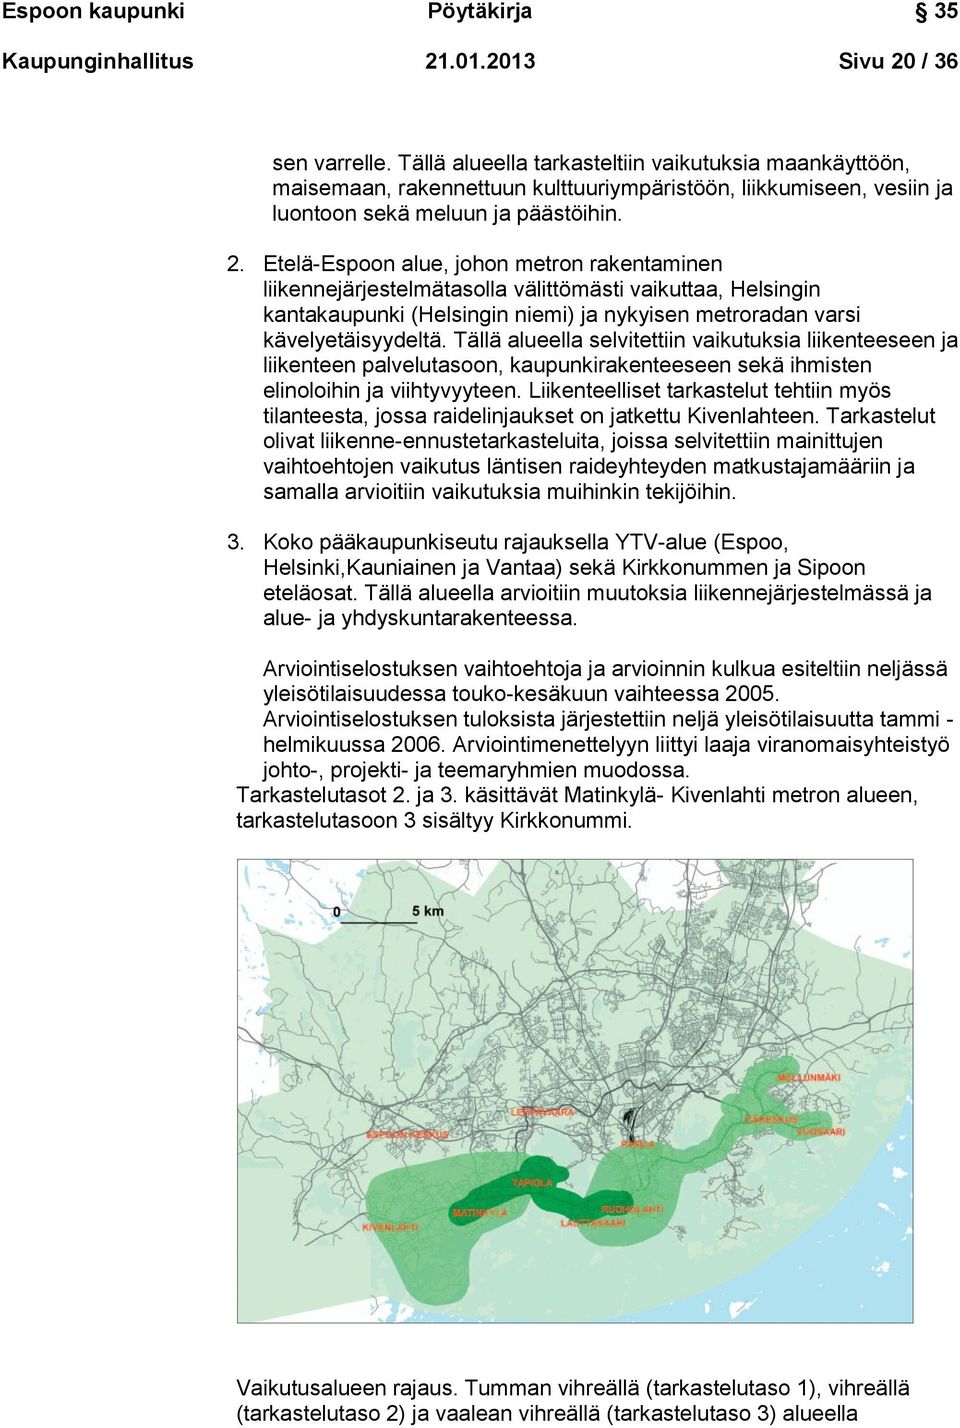 Etelä-Espoon alue, johon metron rakentaminen liikennejärjestelmätasolla välittömästi vaikuttaa, Helsingin kantakaupunki (Helsingin niemi) ja nykyisen metroradan varsi kävelyetäisyydeltä.